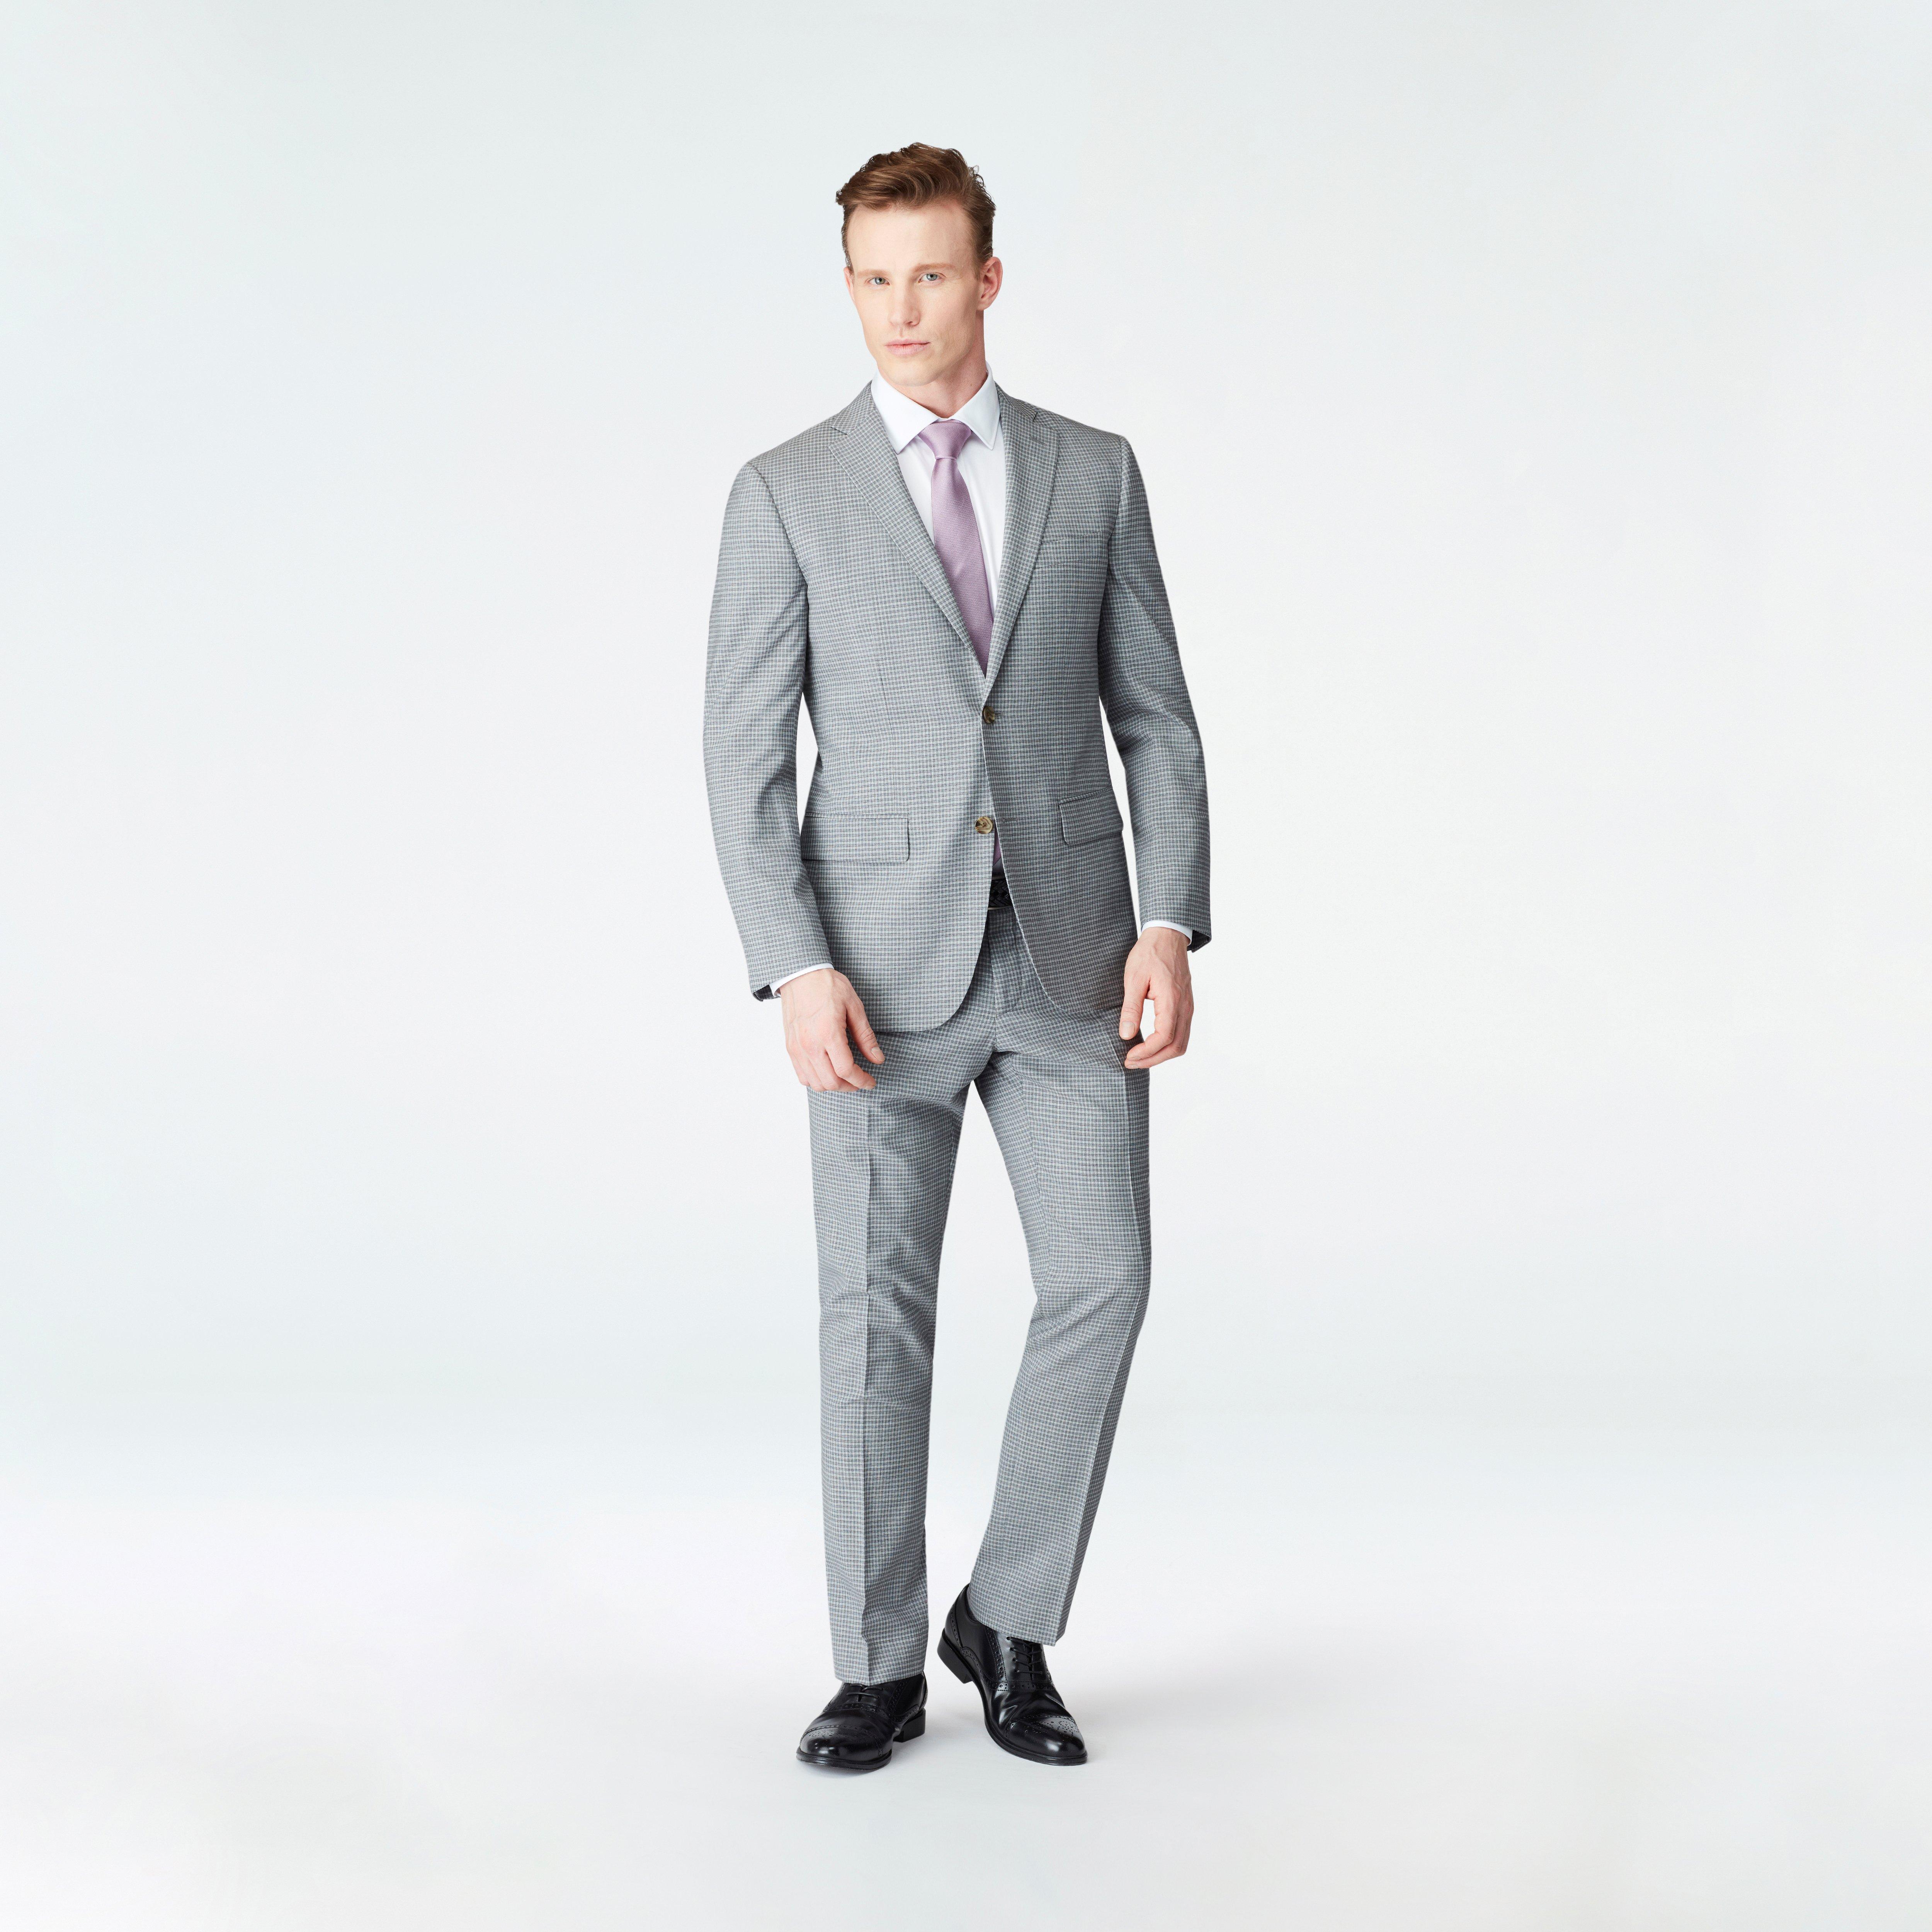 Mens Suits | Mens Fashion Suits & Suit Separates | Politix